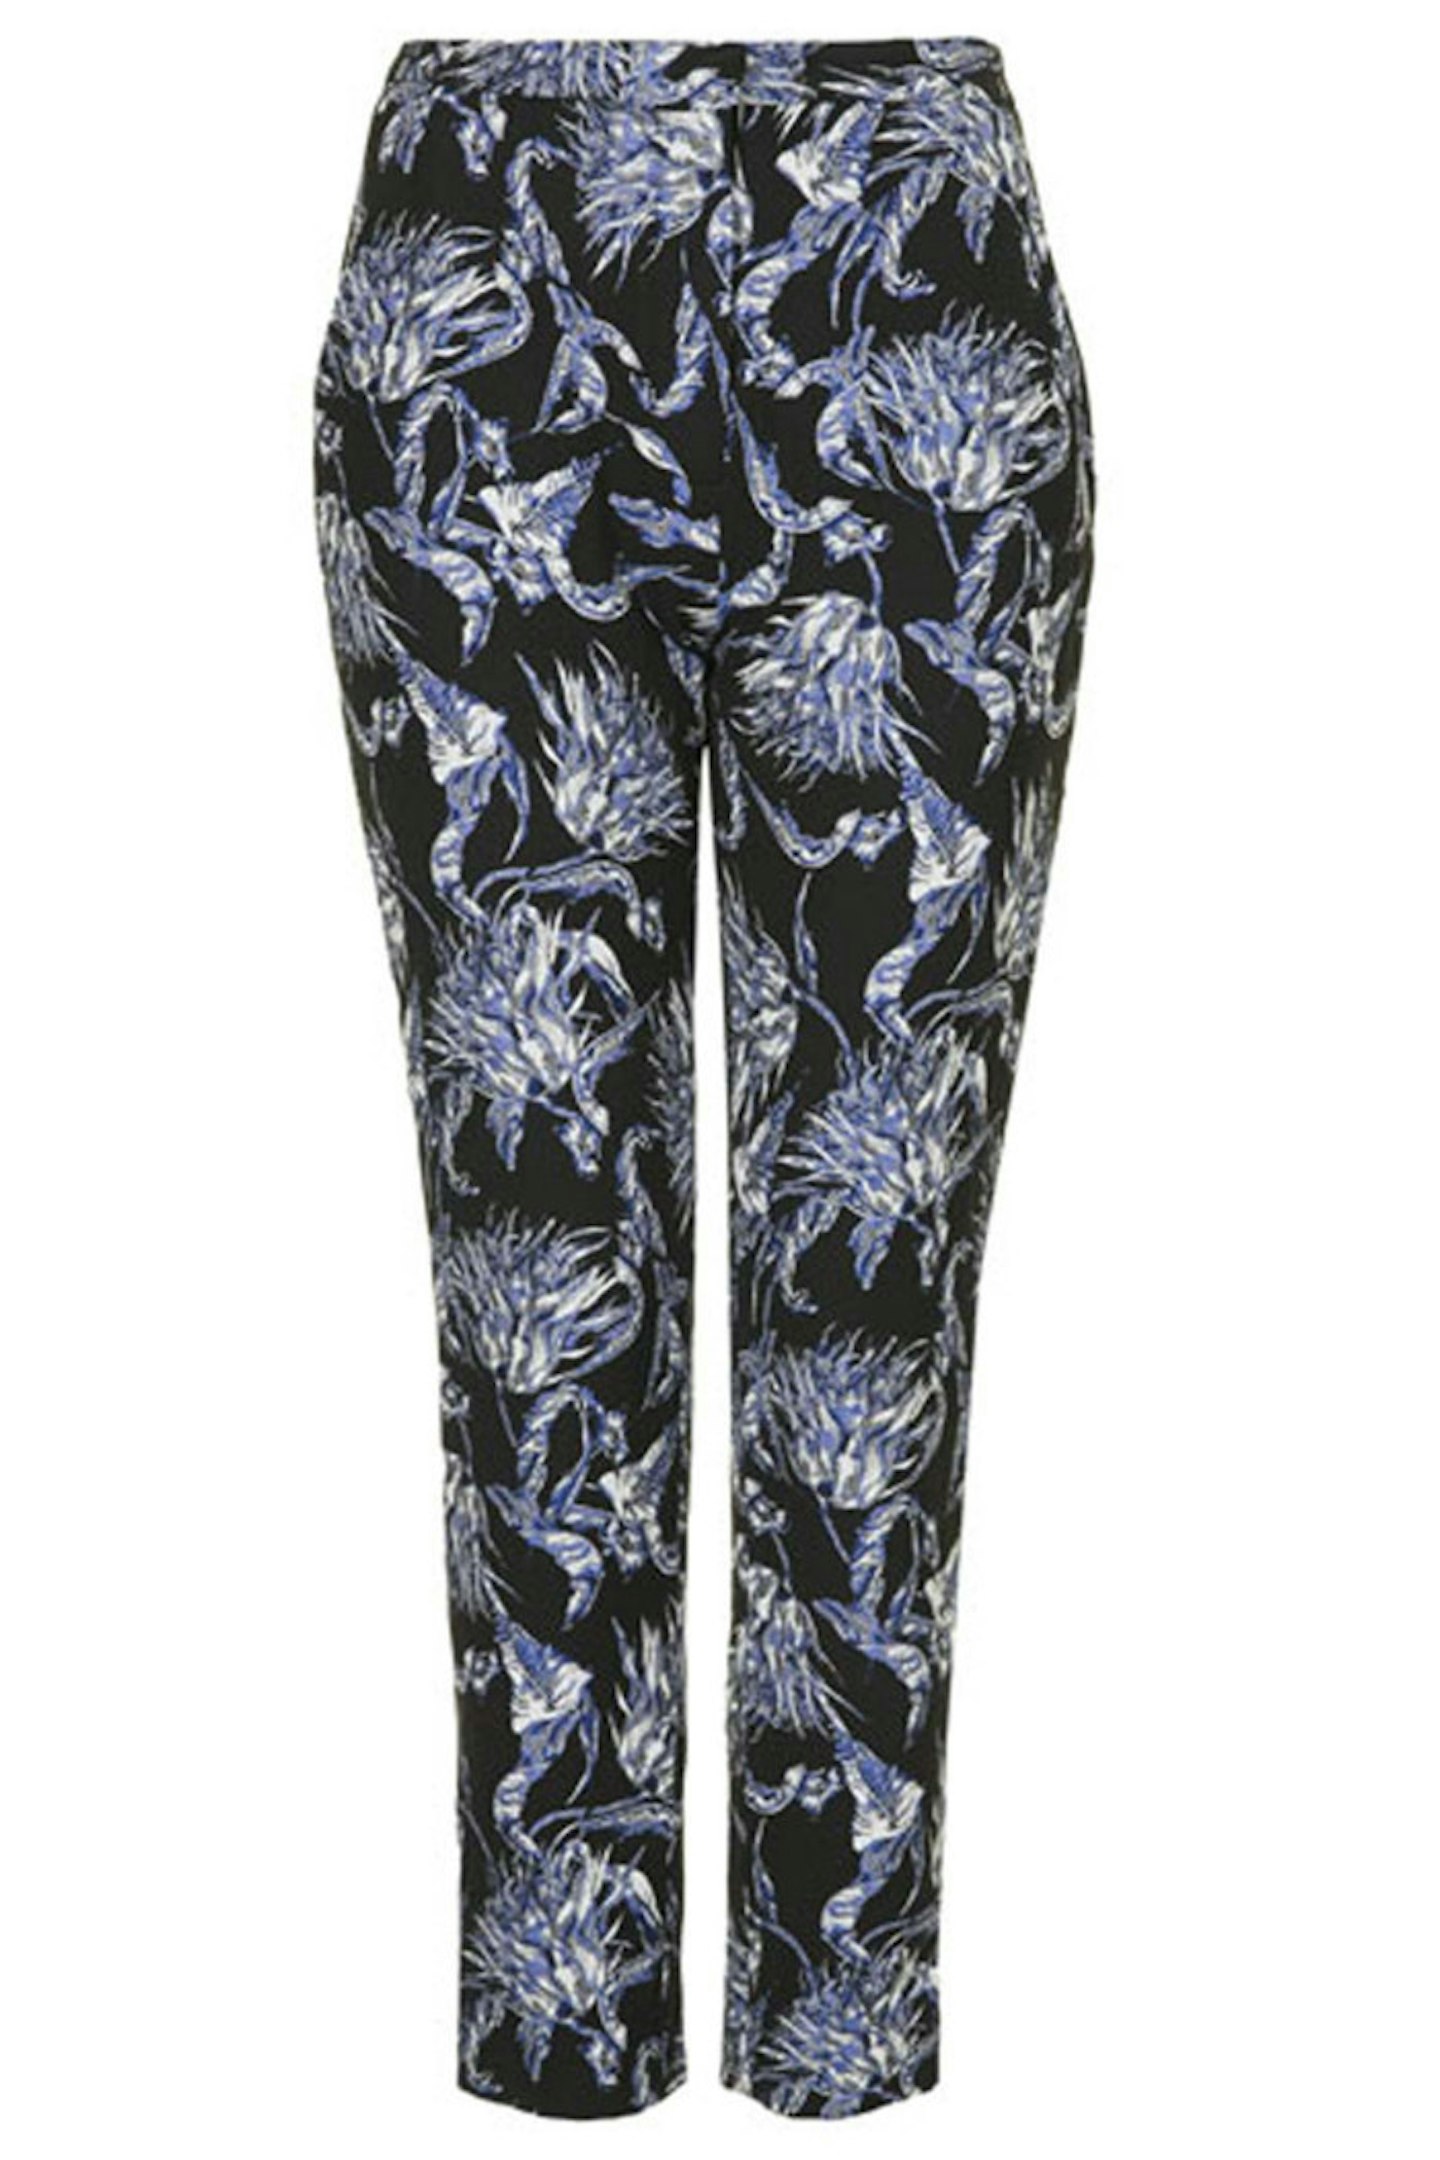 Floral Print Trousers By Unique, £170, Topshop